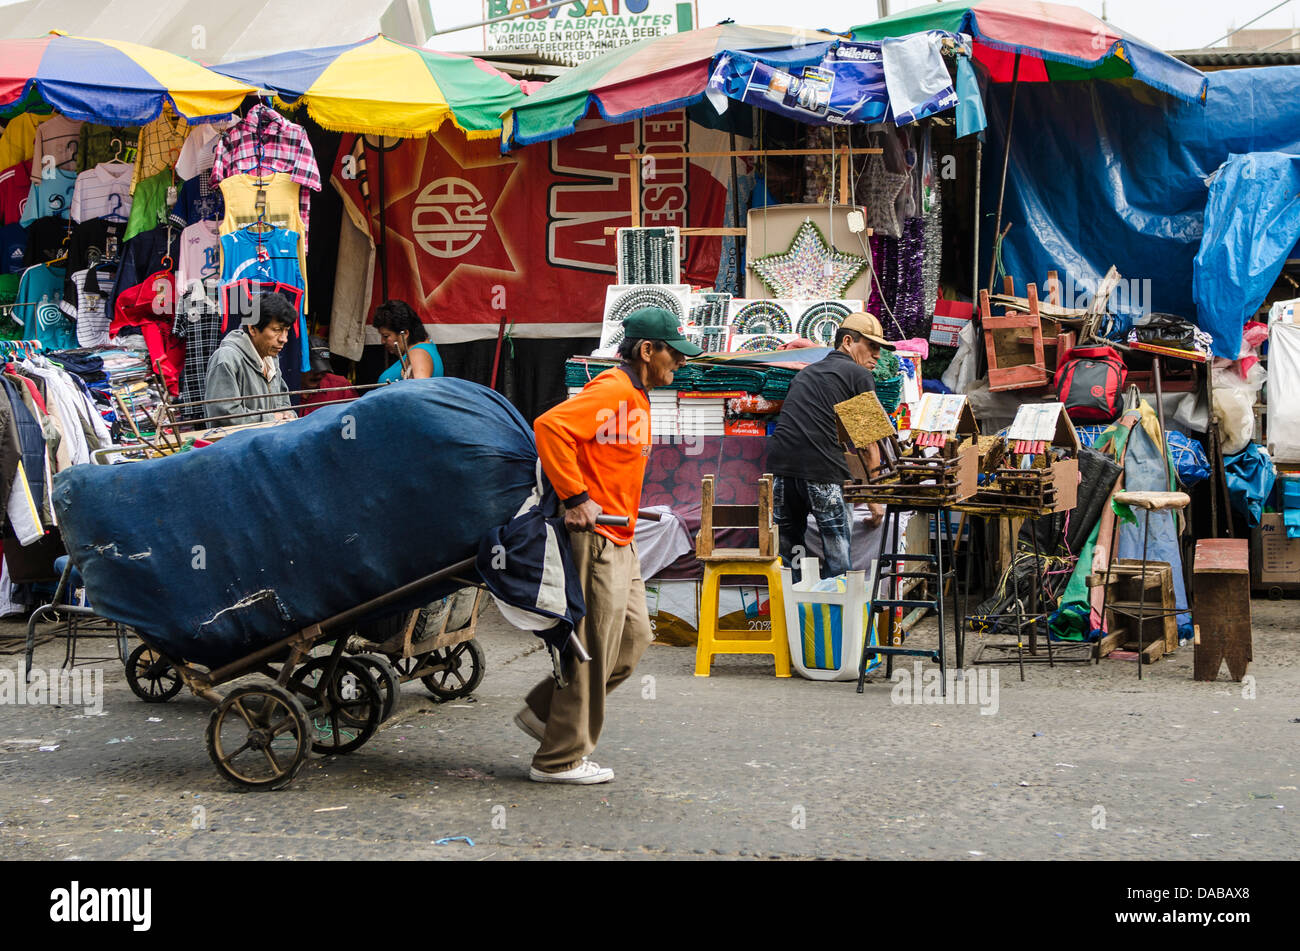 Man zieht Warenkorb Bekleidungsgeschäfte Ständen Einkaufen in lokalen Zentralmarkt Marktplatz in Chiclayo, Peru. Stockfoto